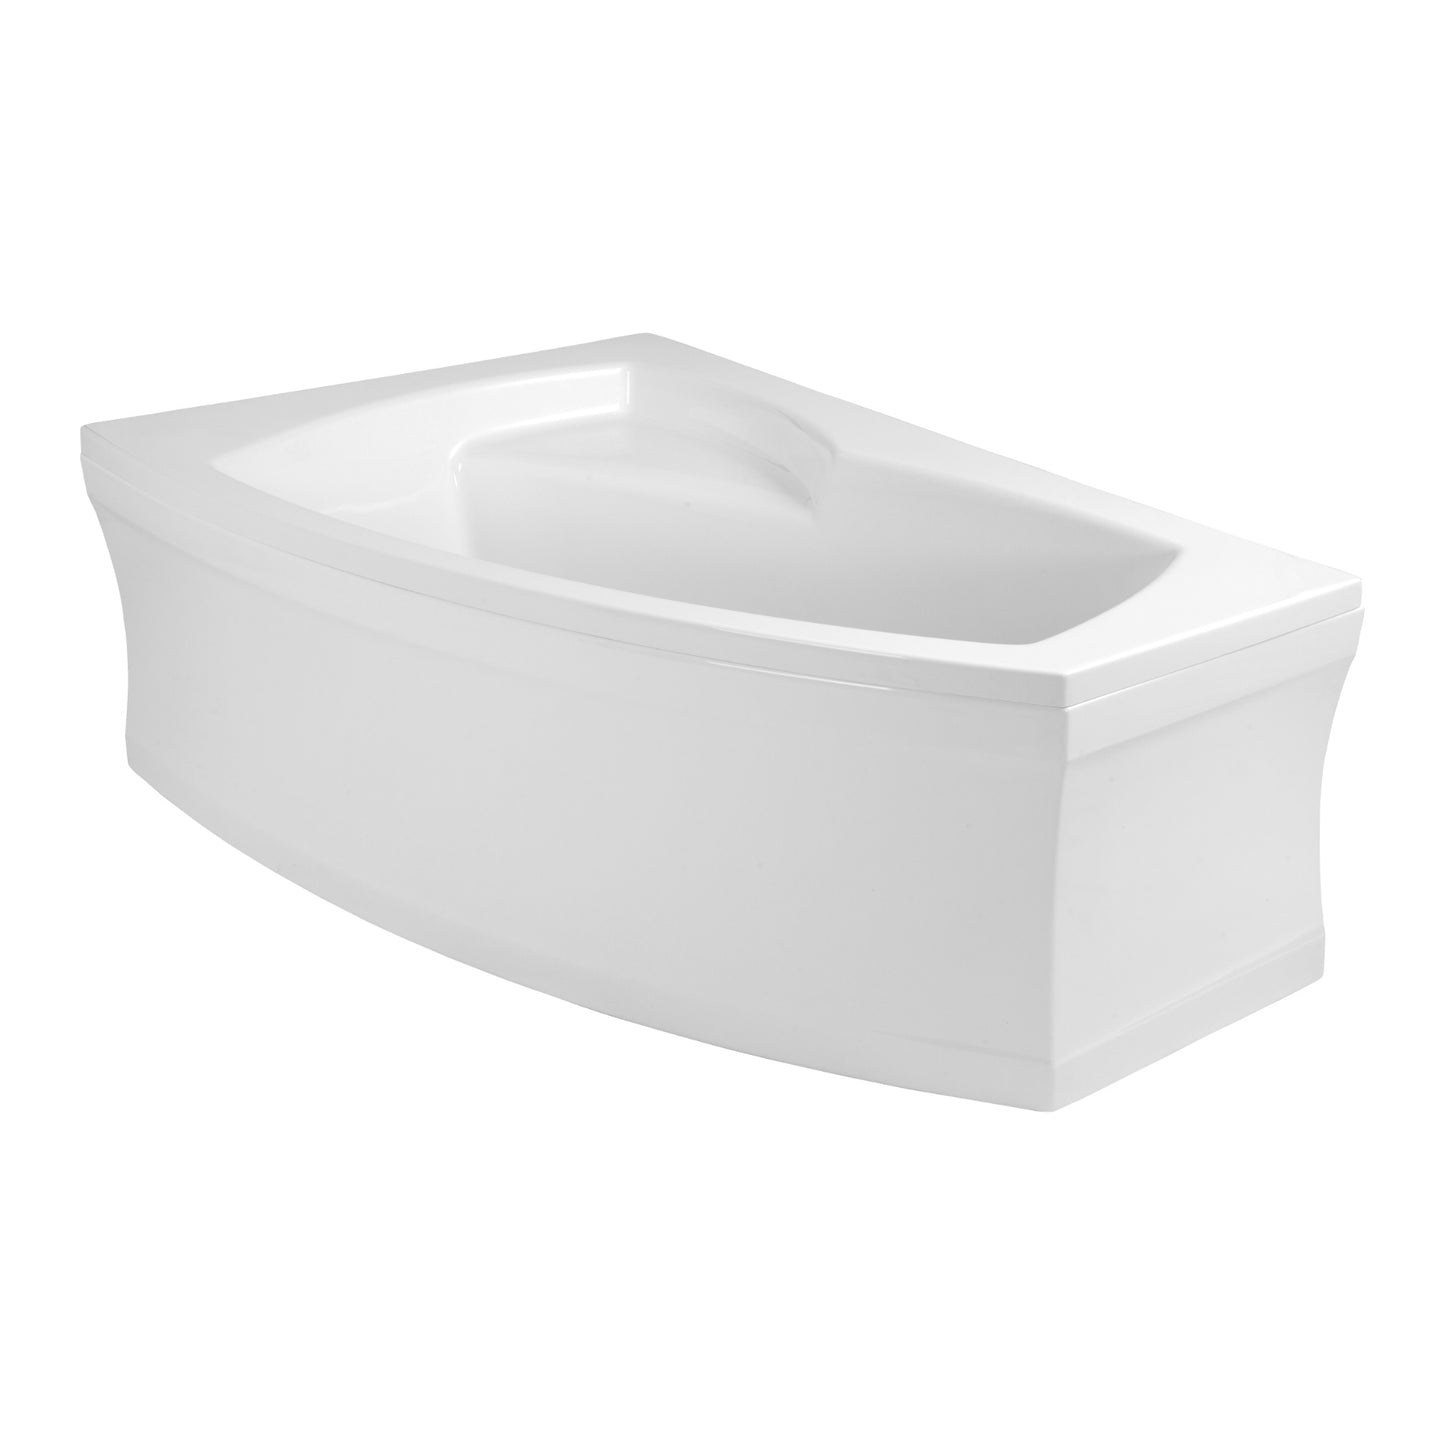 Load image into Gallery viewer, Acrylic asymmetrical corner bathtub FRIDA 160 x 105 cm
